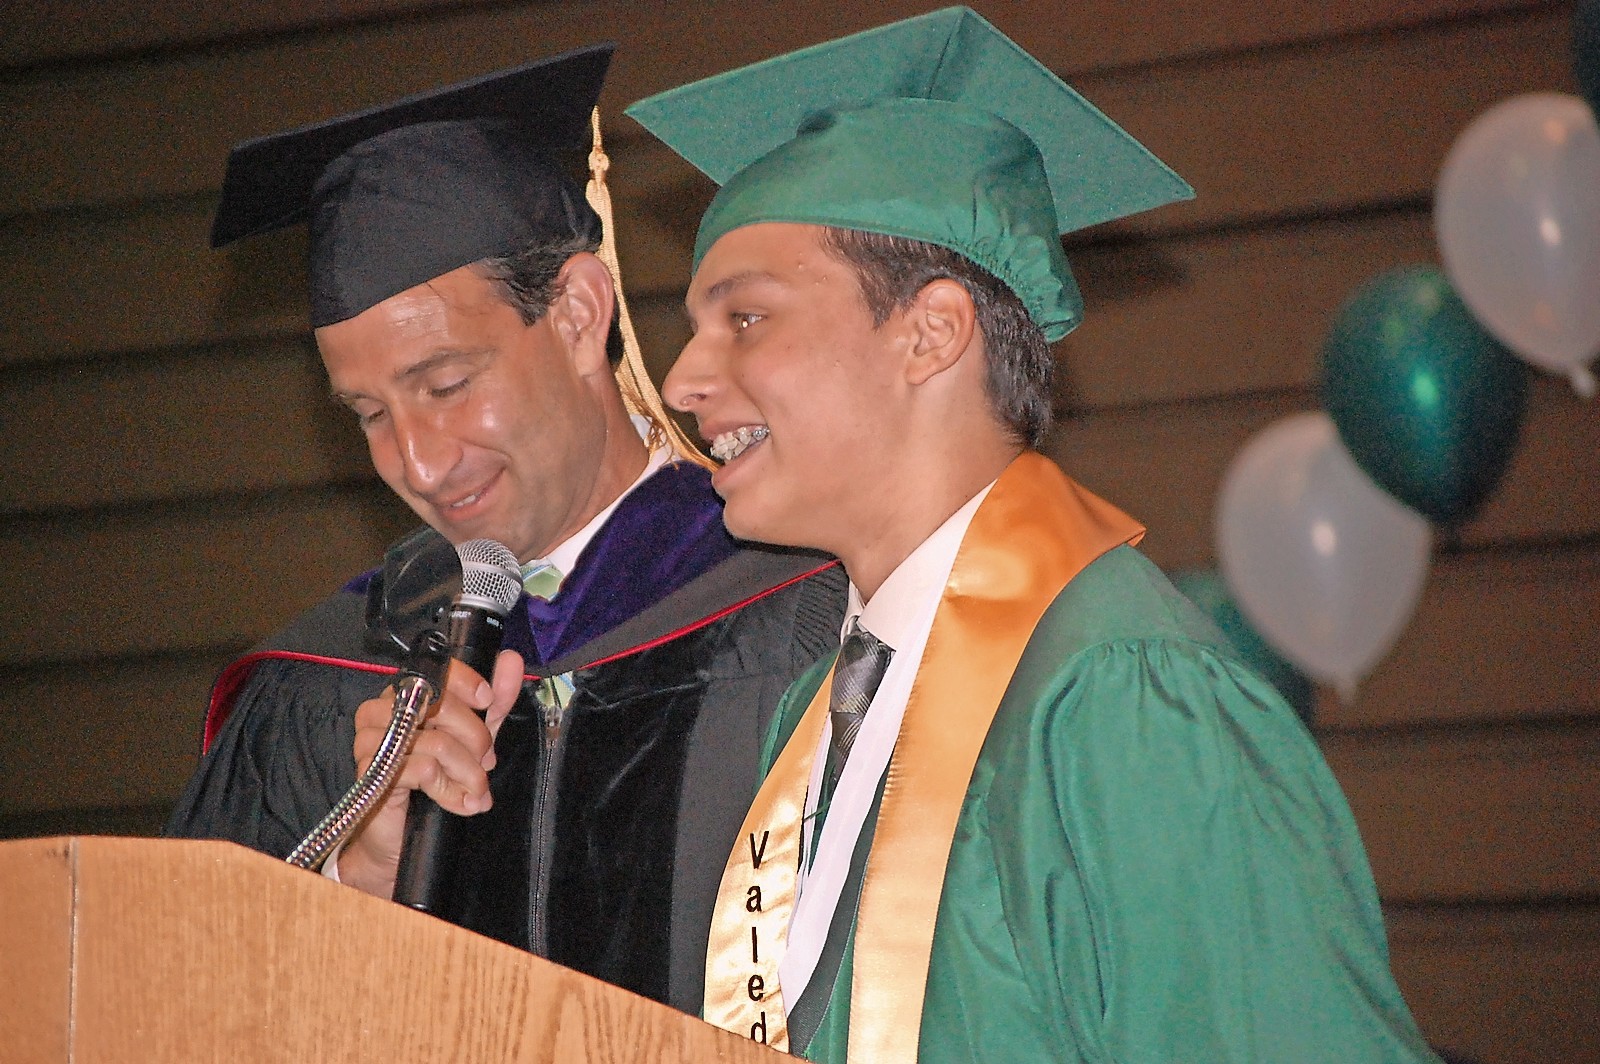 Principal Scott Bersin introduced valedictorian Nicholas Faranda.